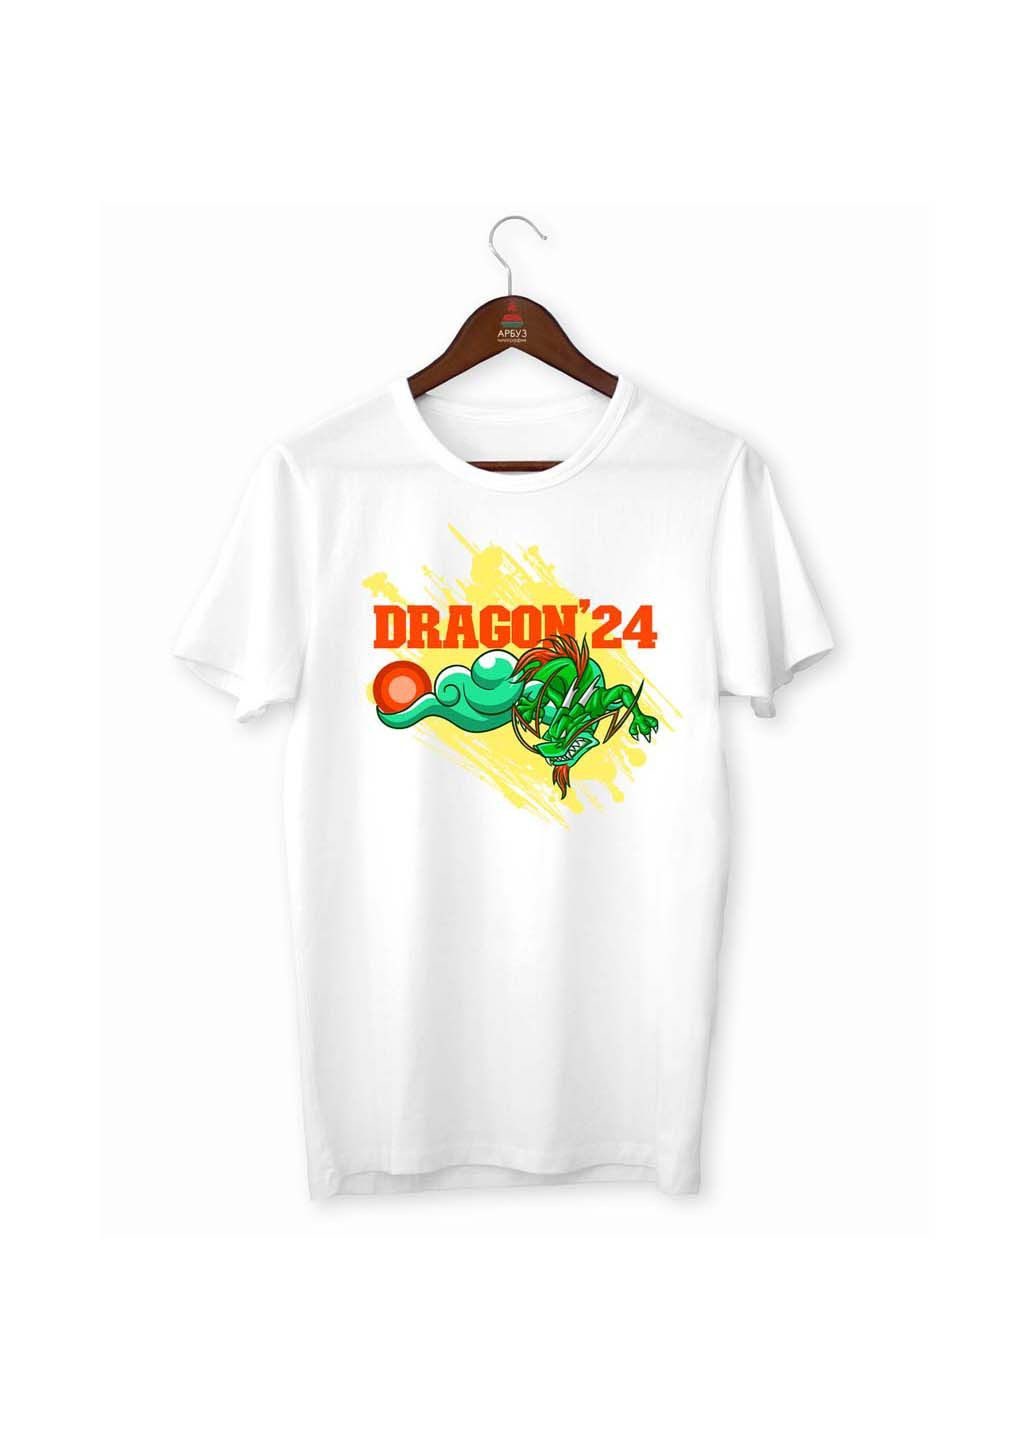 Белая футболка ny dragons. новый год. год дракона 2024 Кавун